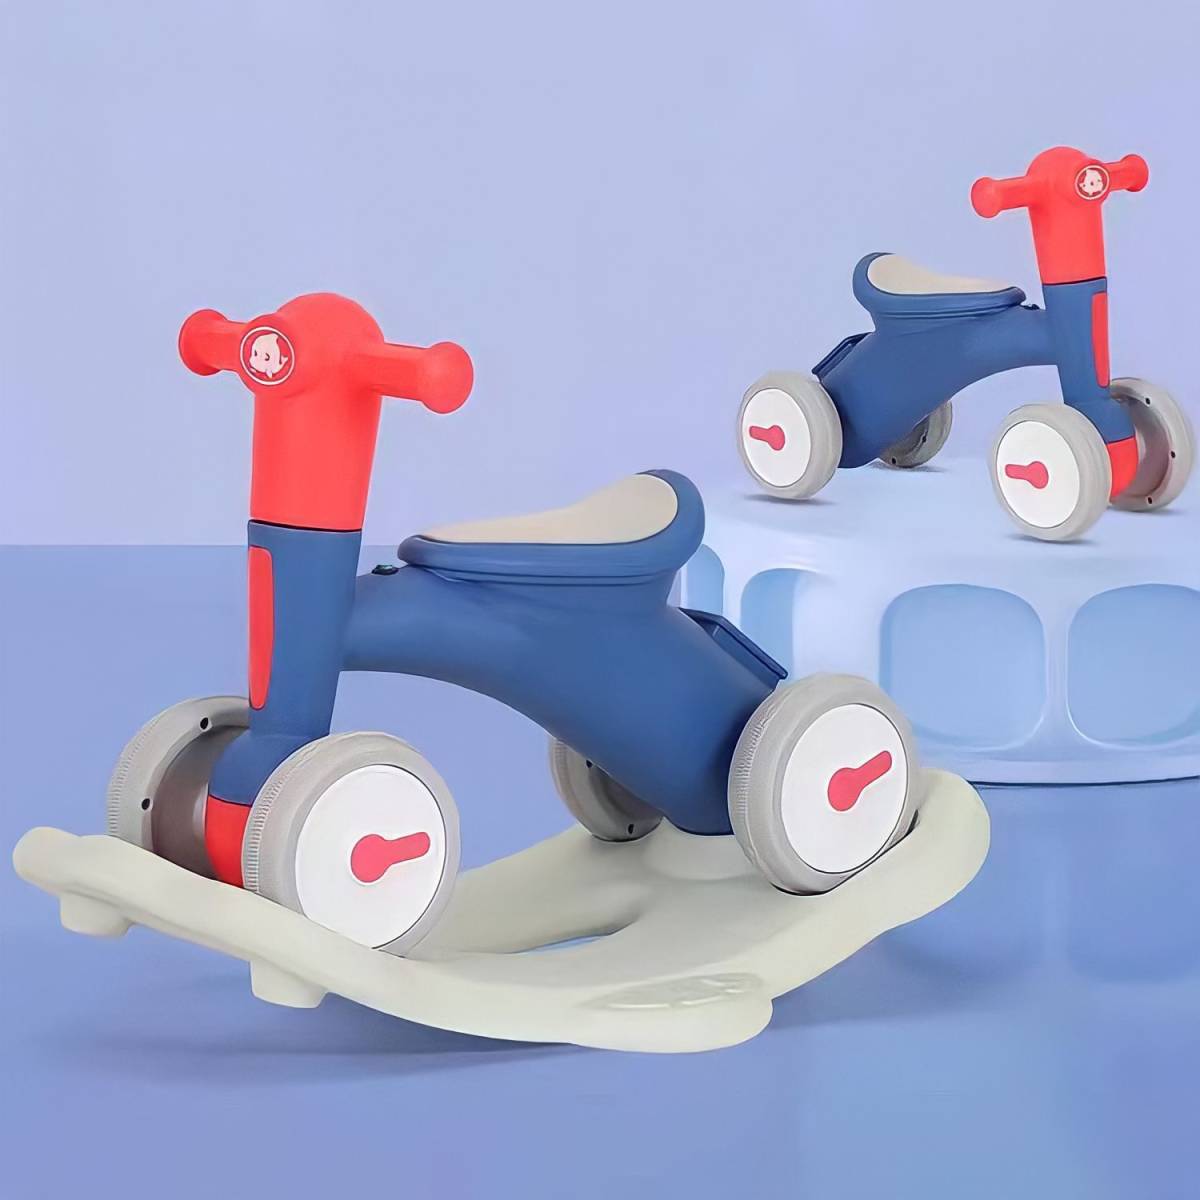 9 синий цвет #80% off . быстрое решение,2WAY# первый в Японии # ходунки # baby War машина # панель Like # самокат # кресло-качалка -# деревянная лошадь # ручная тележка 